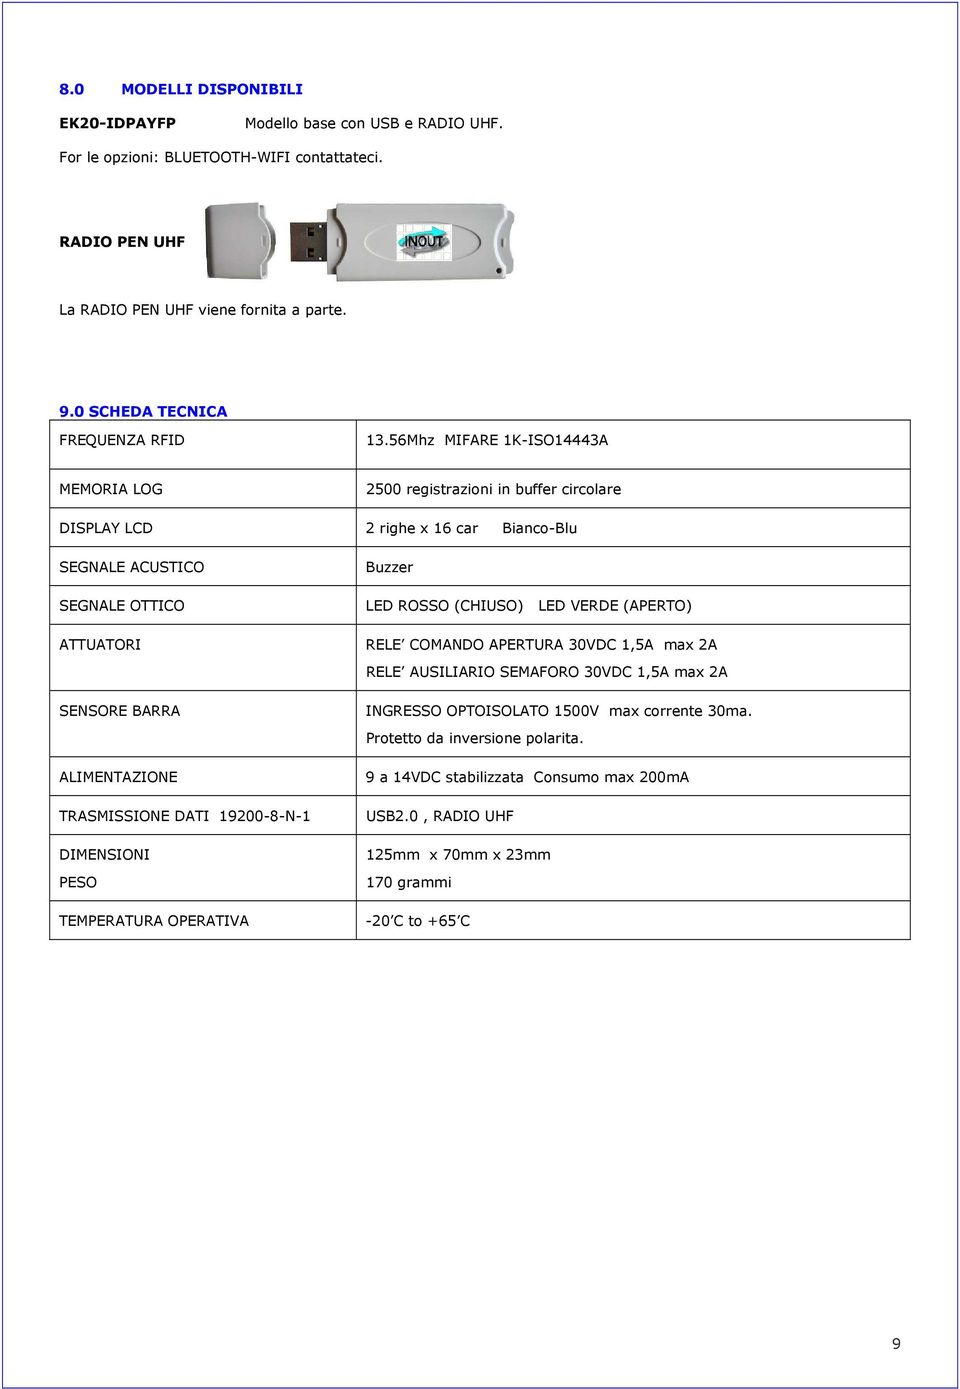 56Mhz MIFARE 1K-ISO14443A MEMORIA LOG 2500 registrazioni in buffer circolare DISPLAY LCD 2 righe x 16 car Bianco-Blu SEGNALE ACUSTICO SEGNALE OTTICO ATTUATORI SENSORE BARRA ALIMENTAZIONE